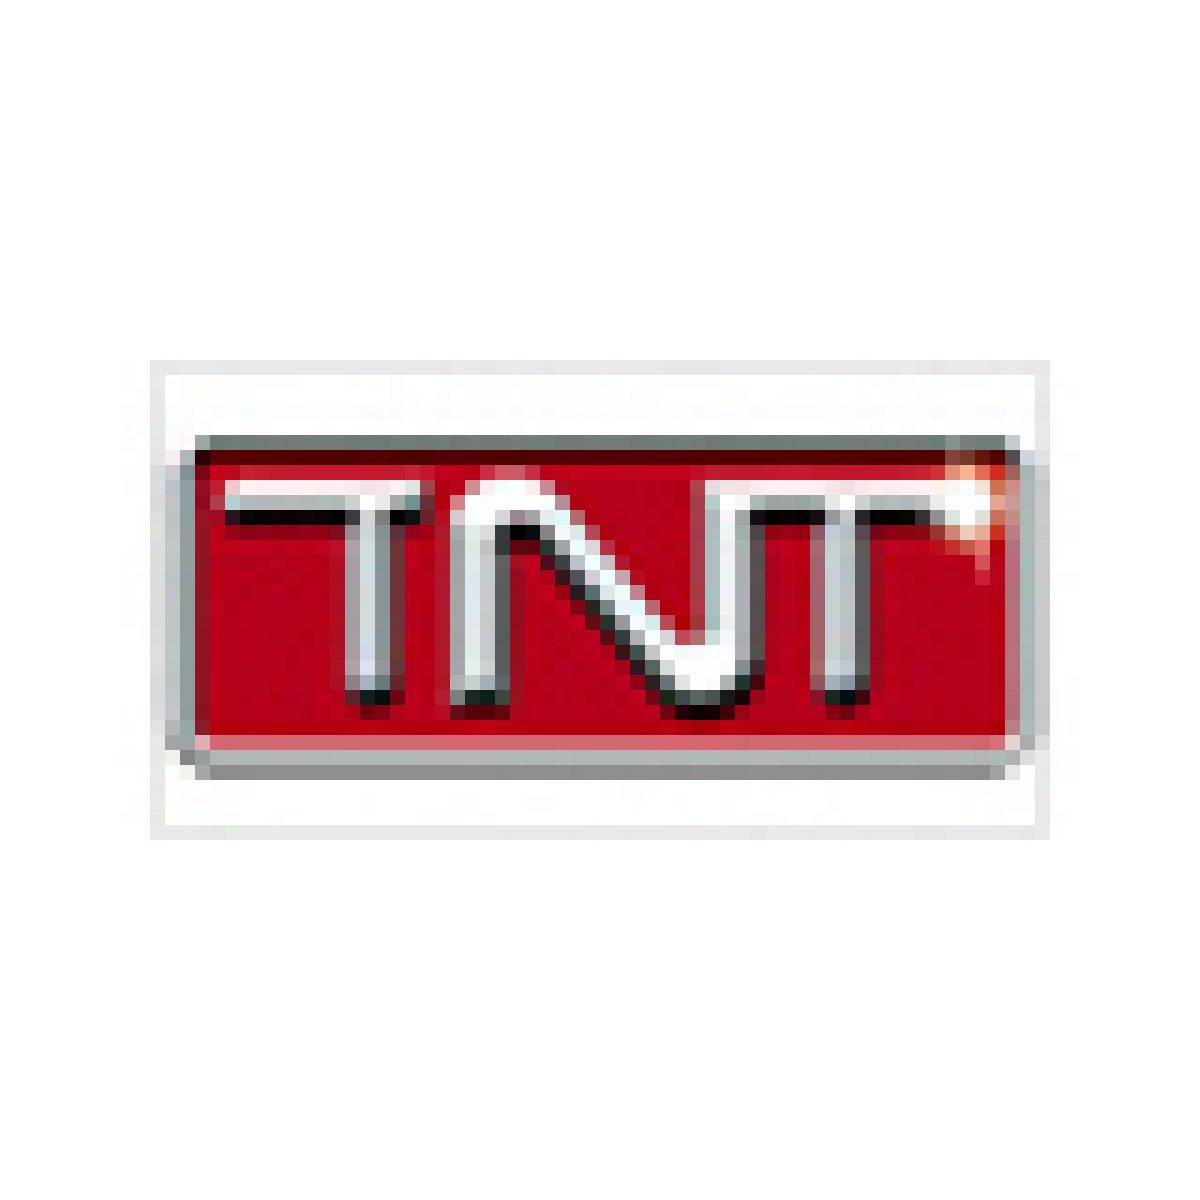 TNT : Paris défend ses chaînes bonus à TF1, M6 et Canal+ face à Bruxelles